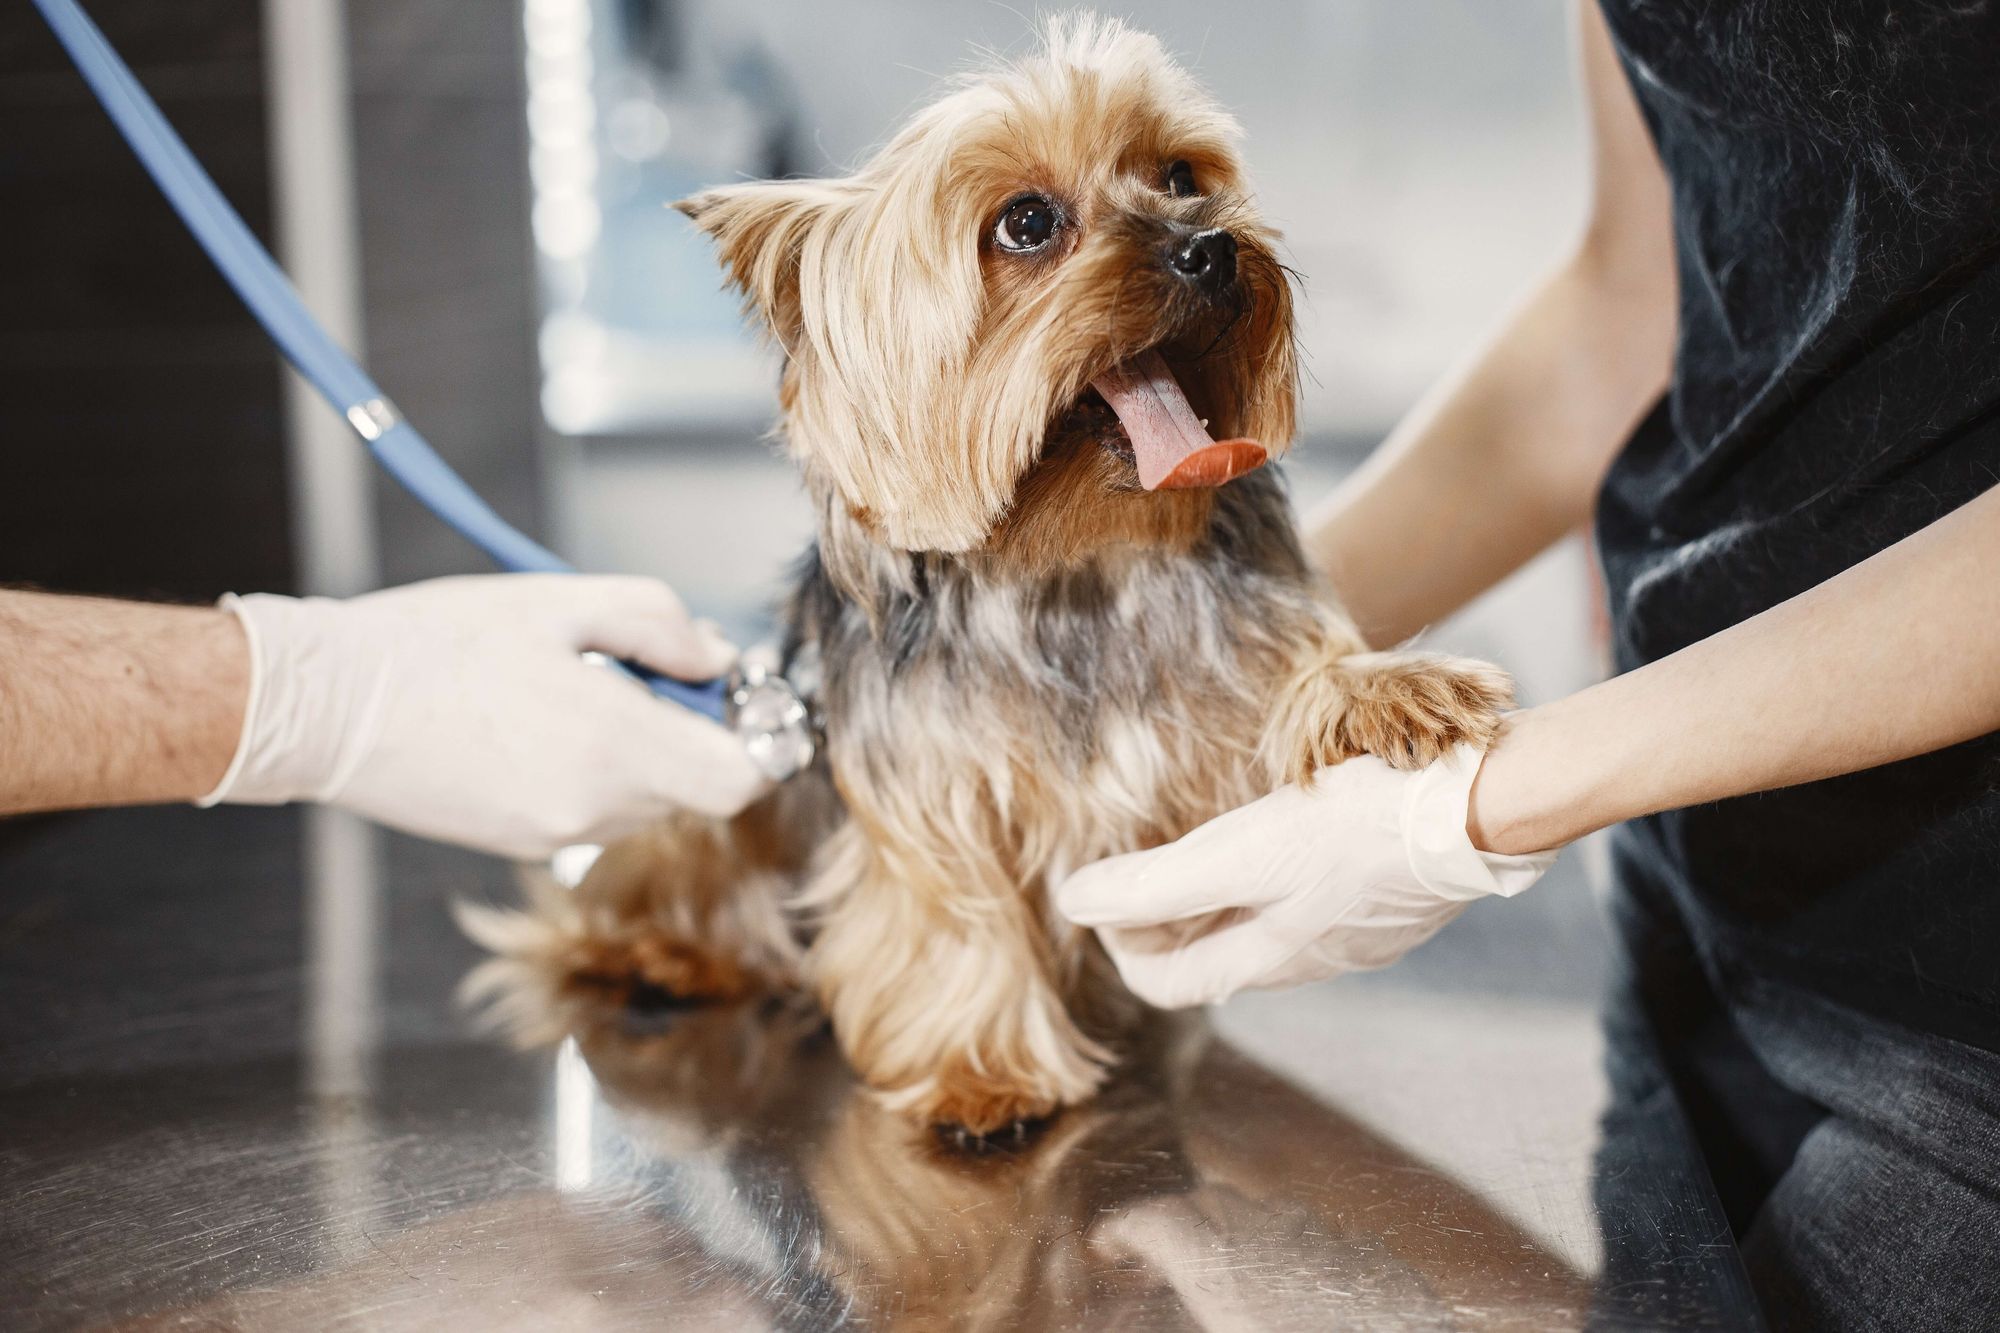 Dog at vet examination